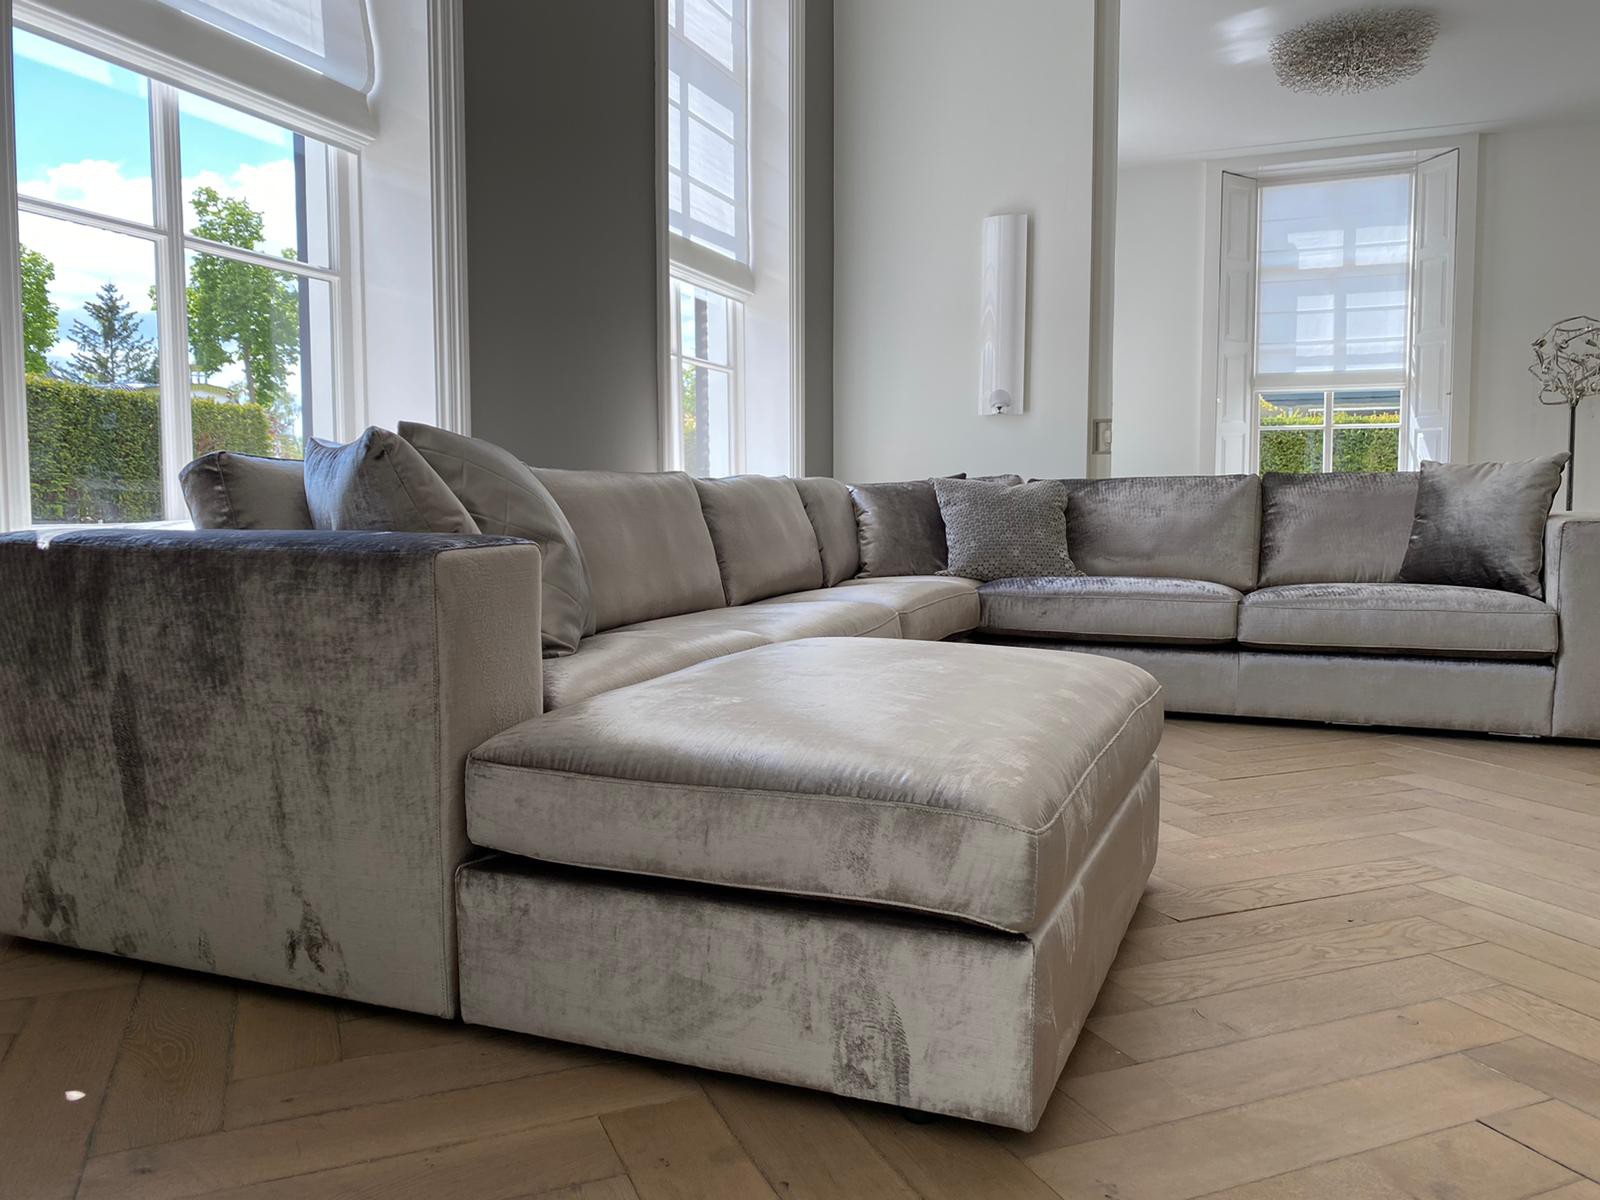 Shinkan Gouverneur Verkeersopstopping Luxe meubels voor woninginrichting | Bankstyle